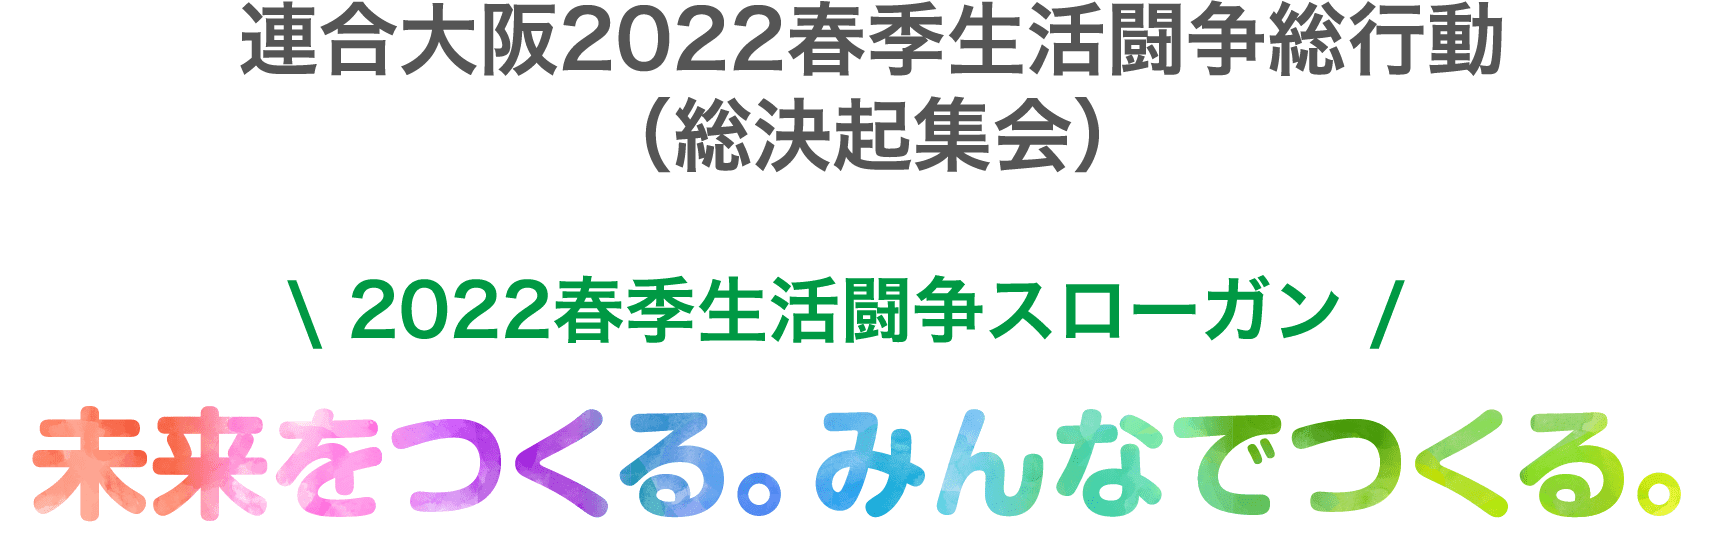 連合大阪2022春季生活闘争総行動（総決起集会）\ 2022春季生活闘争スローガン /未来をつくる。みんなでつくる。